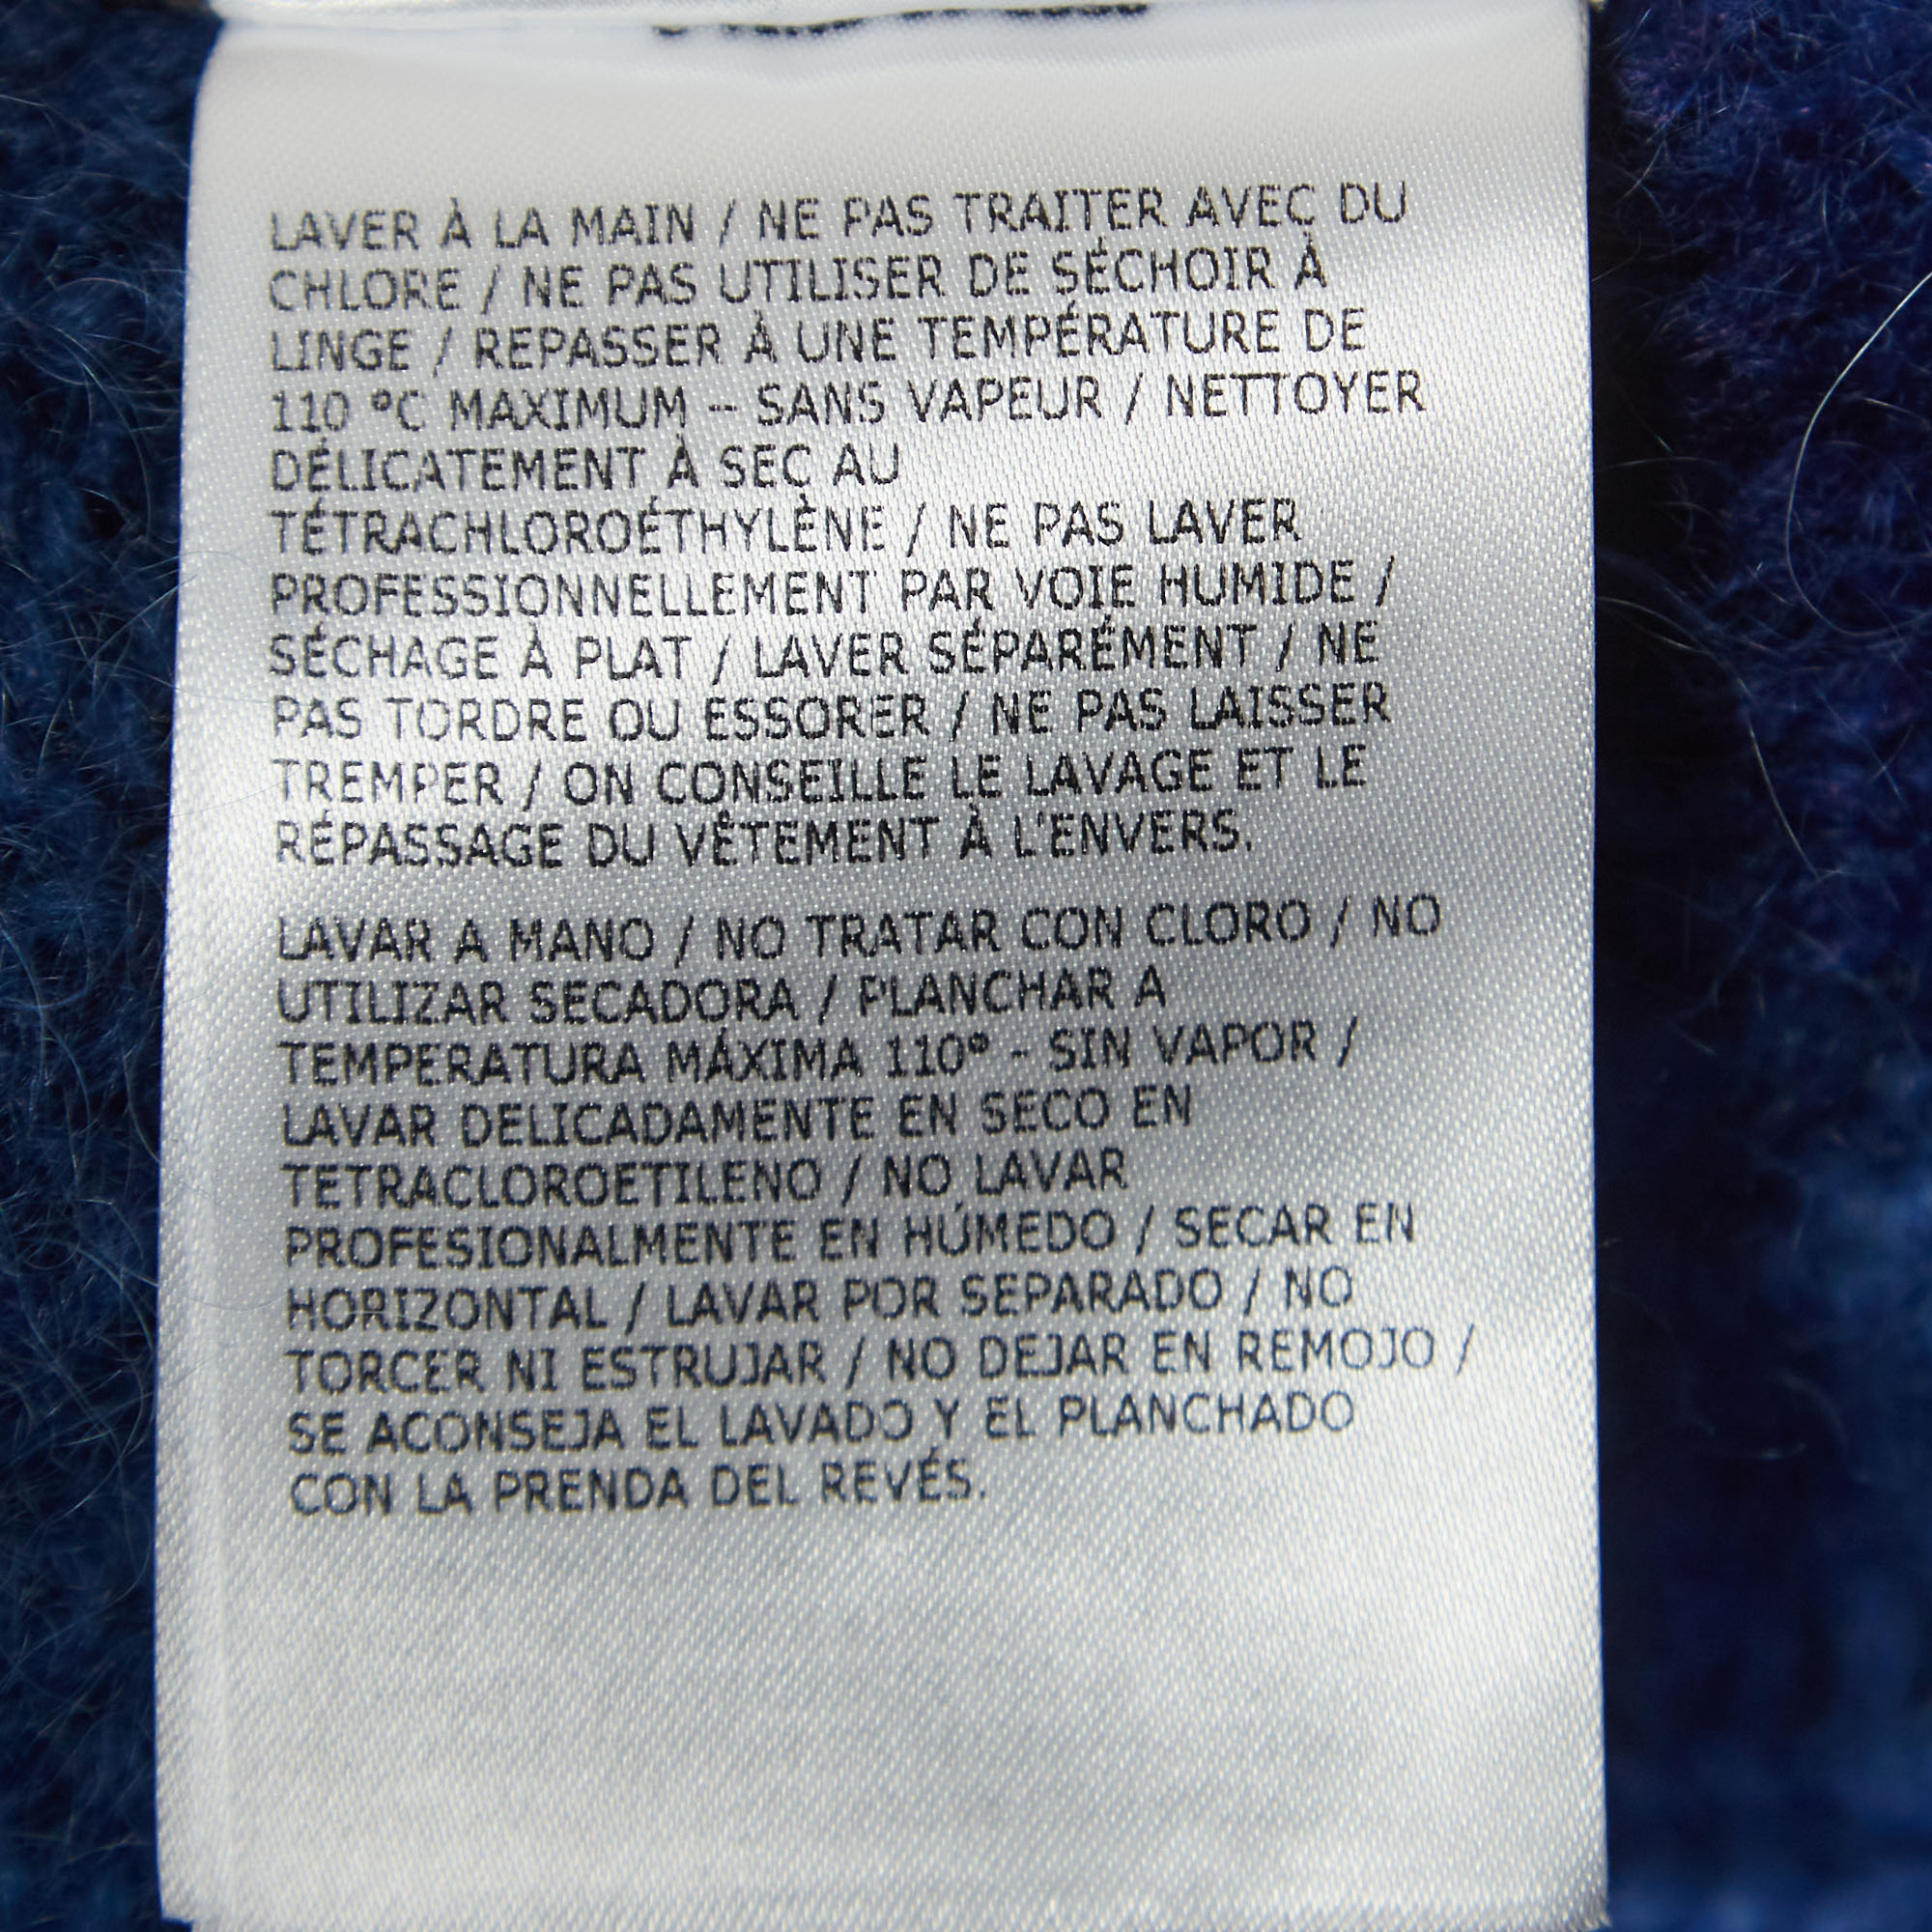 Moncler Blue Tye Dye Printed Mohair Knit Sweater XL